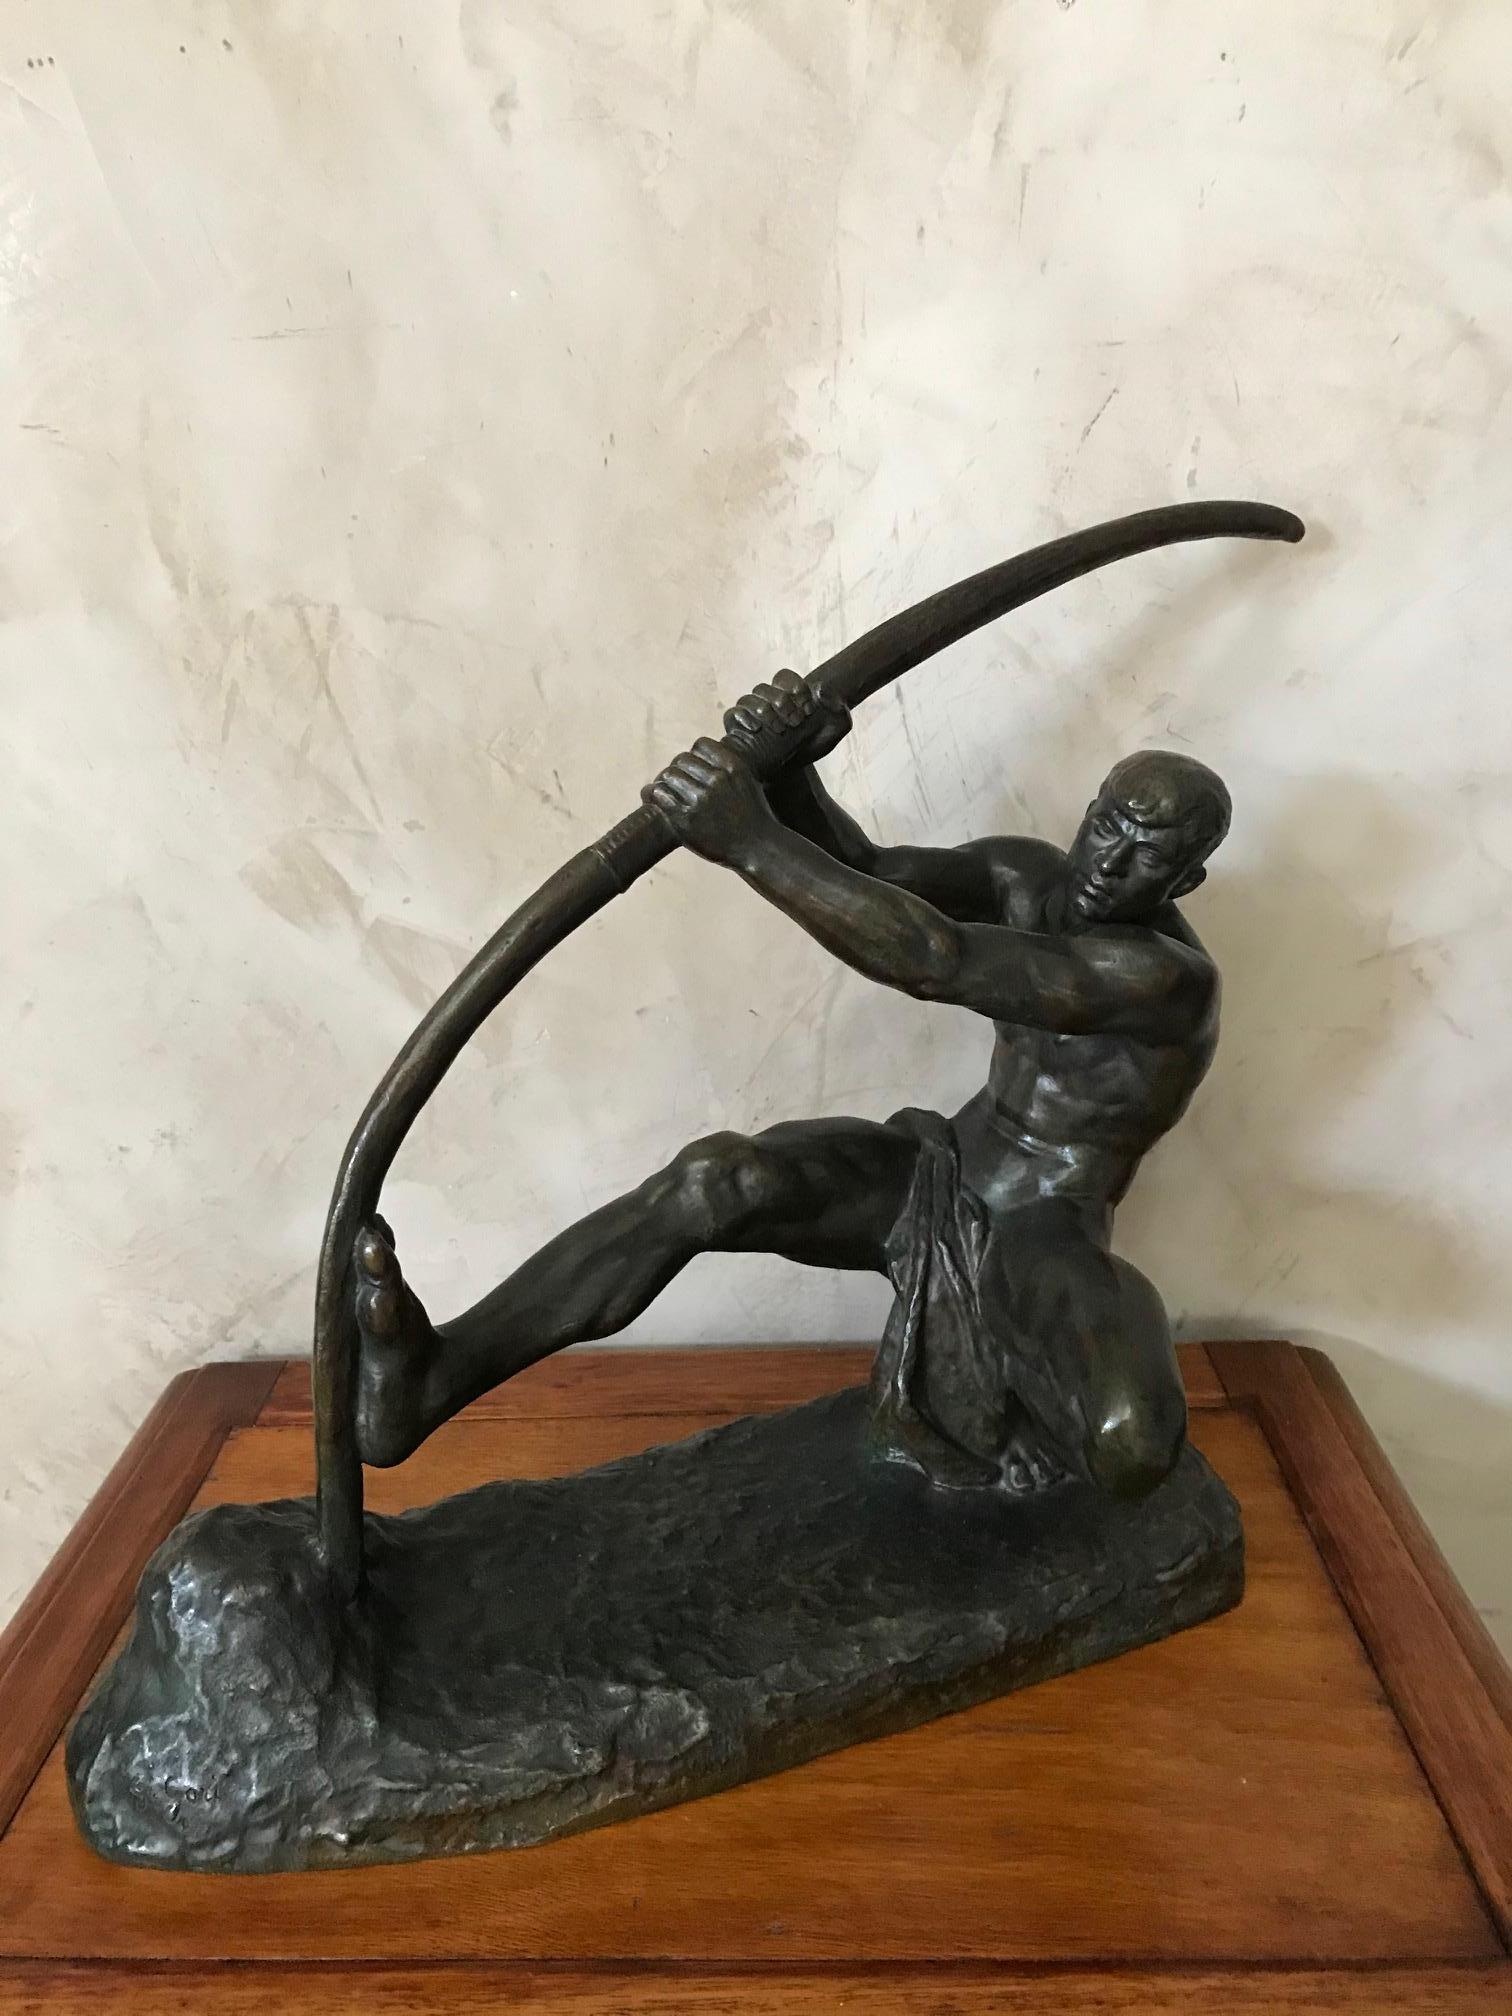 Bel homme en bronze Art Déco du 20ème siècle avec un arc signé par G.Gori du 1925.
Très belle patine brune. Statue très élégante.
Parfait état.